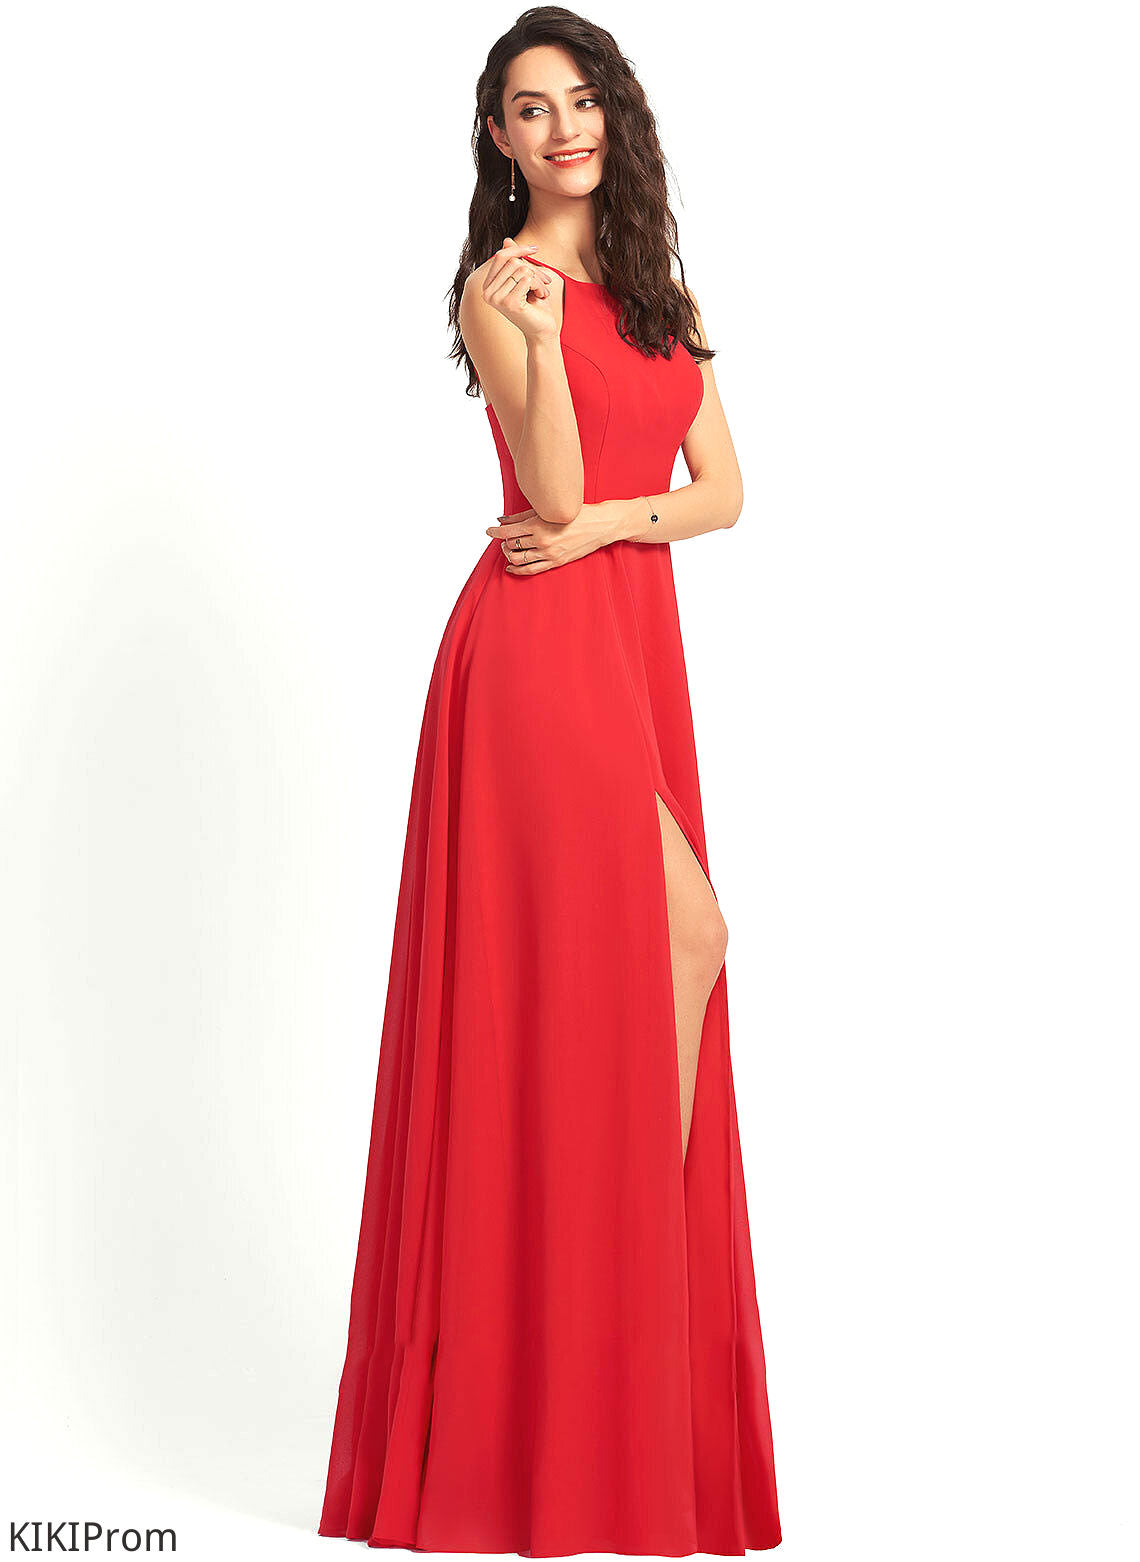 ScoopNeck Neckline A-Line Length Fabric Straps Silhouette Floor-Length Zaria Bridesmaid Dresses